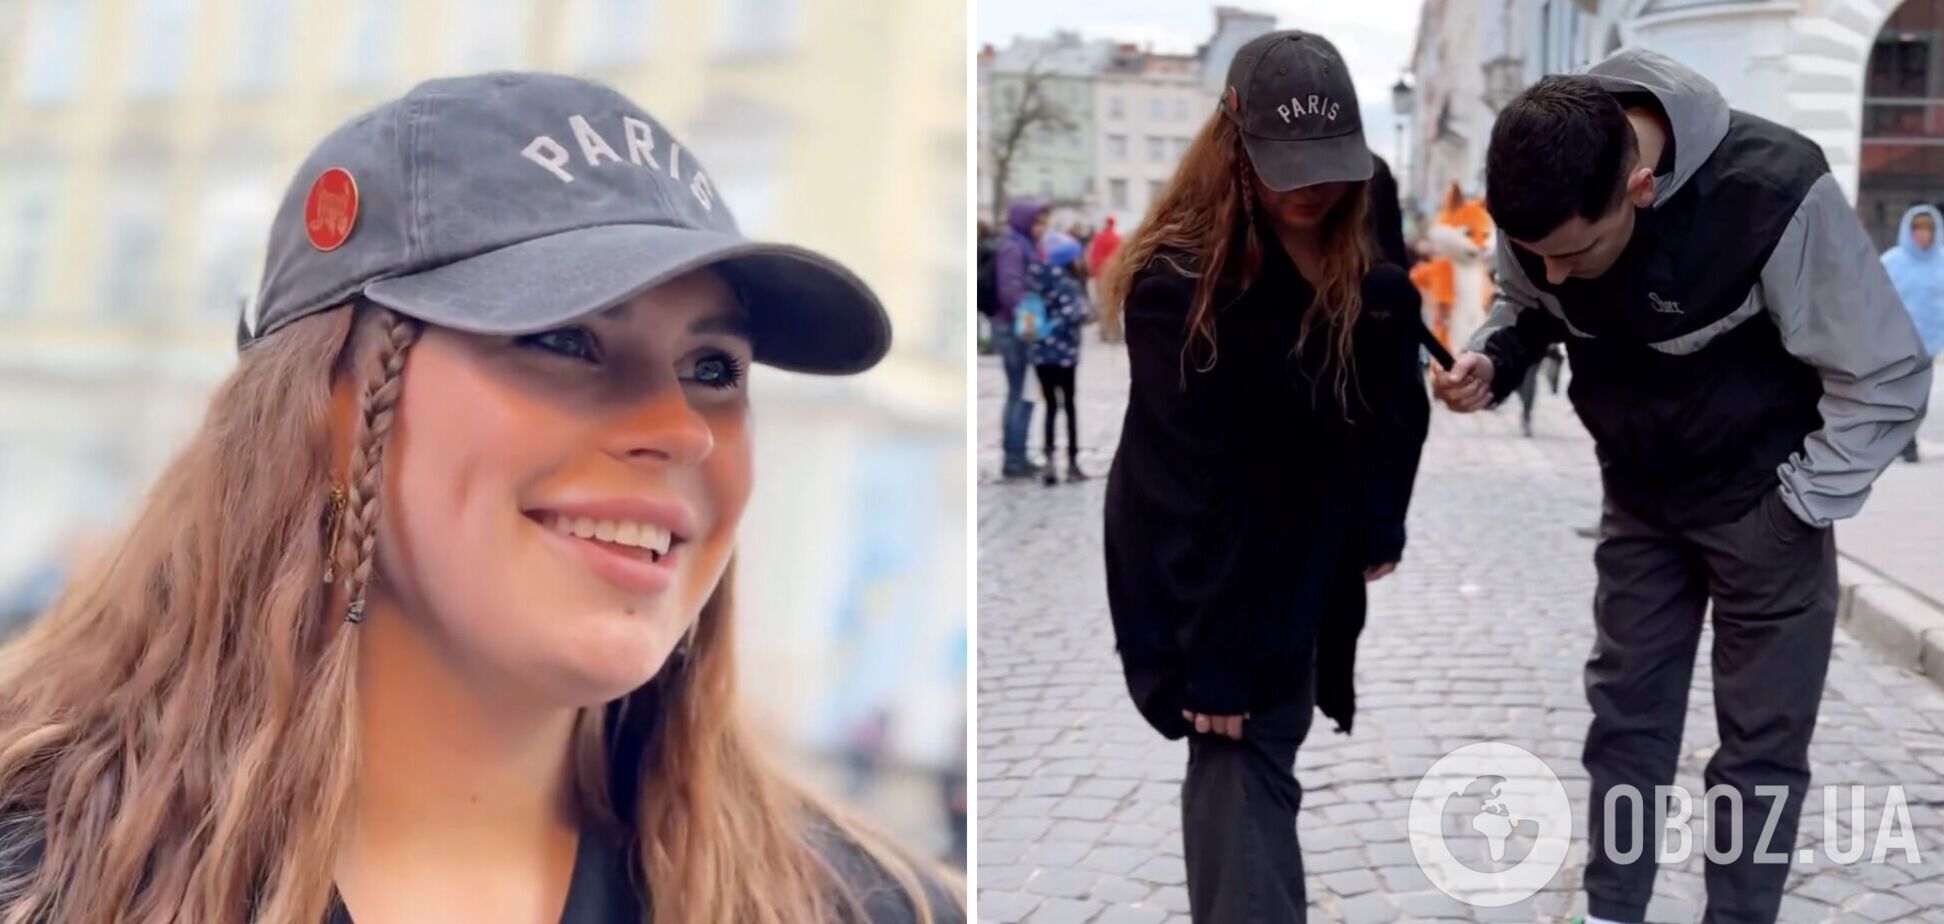 Александра Зарицкая похвасталась, что украла кепку в секонде. Видео